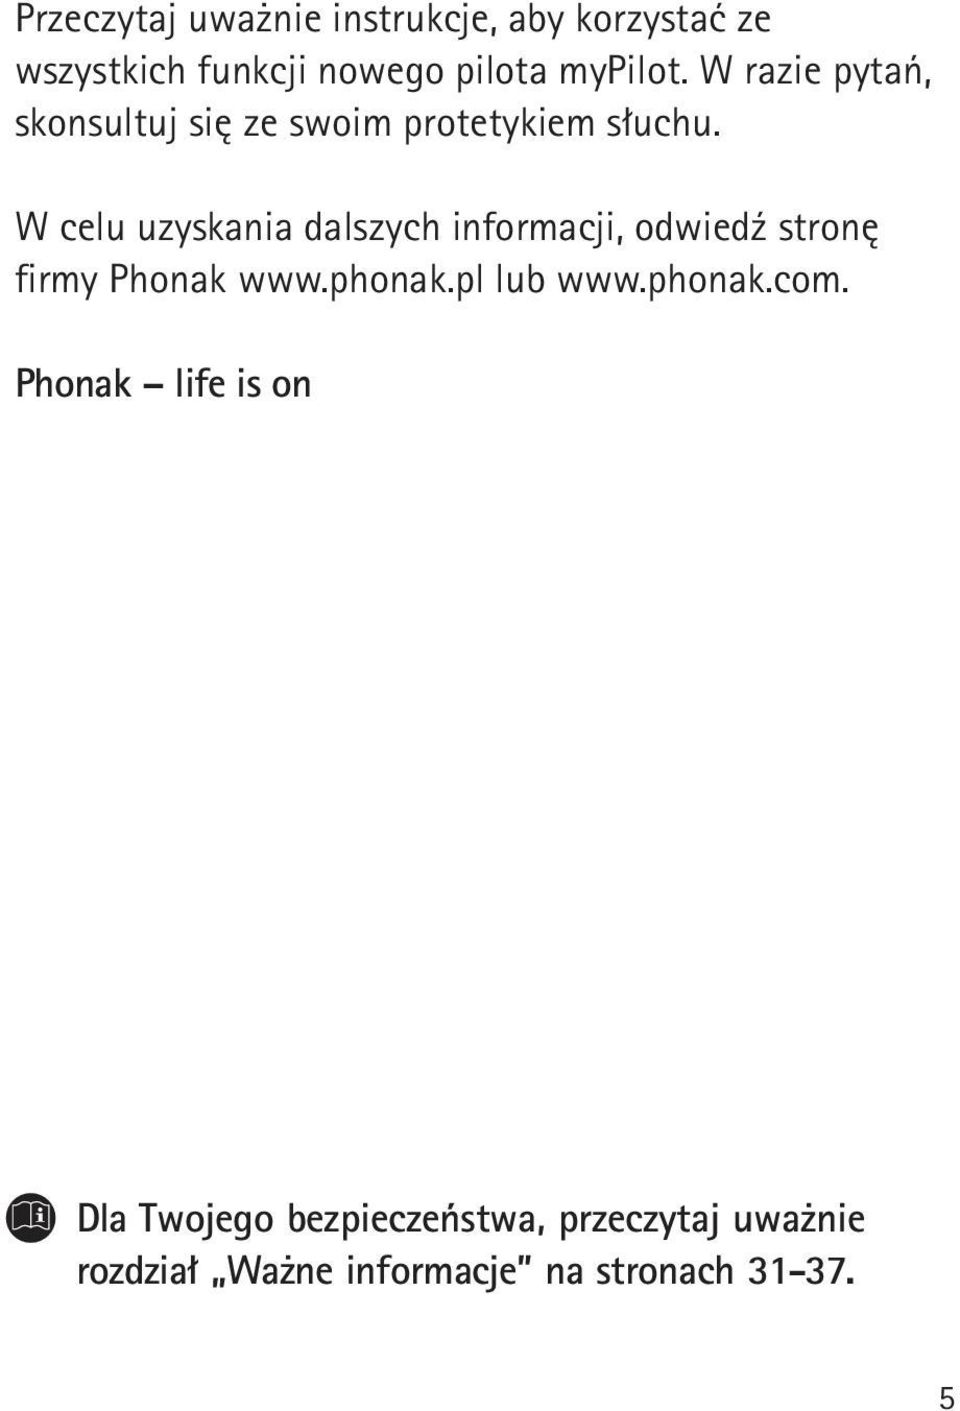 W celu uzyskania dalszych informacji, odwiedź stronę firmy Phonak www.phonak.pl lub www.